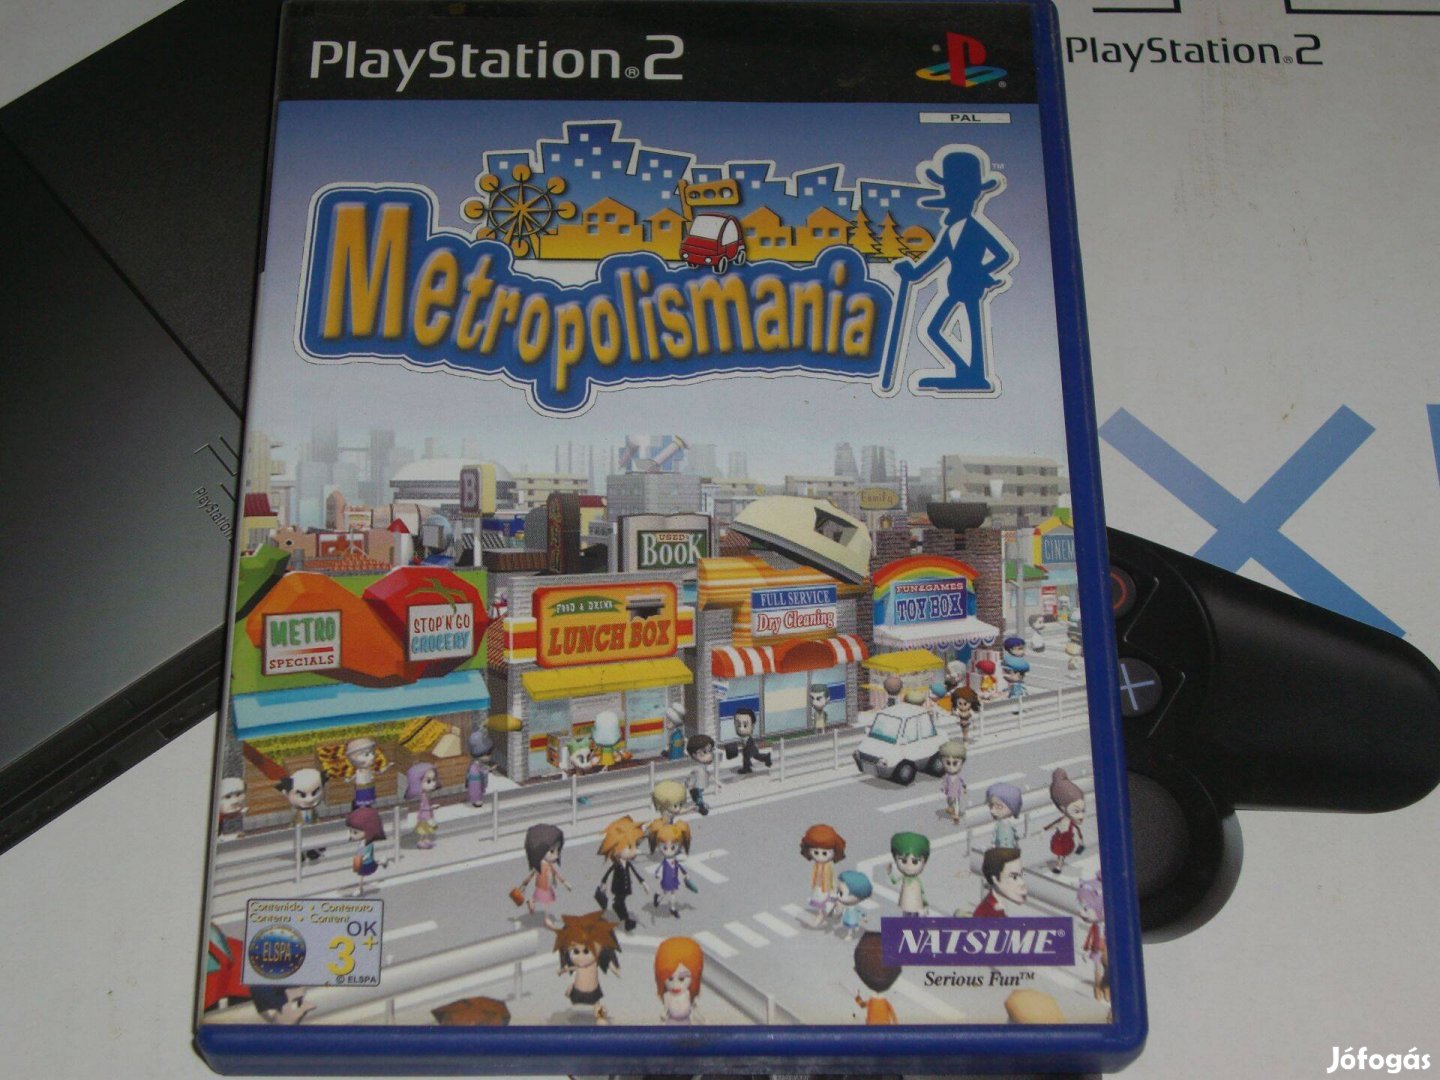 Metropolismania Playstation 2 eredeti lemez eladó